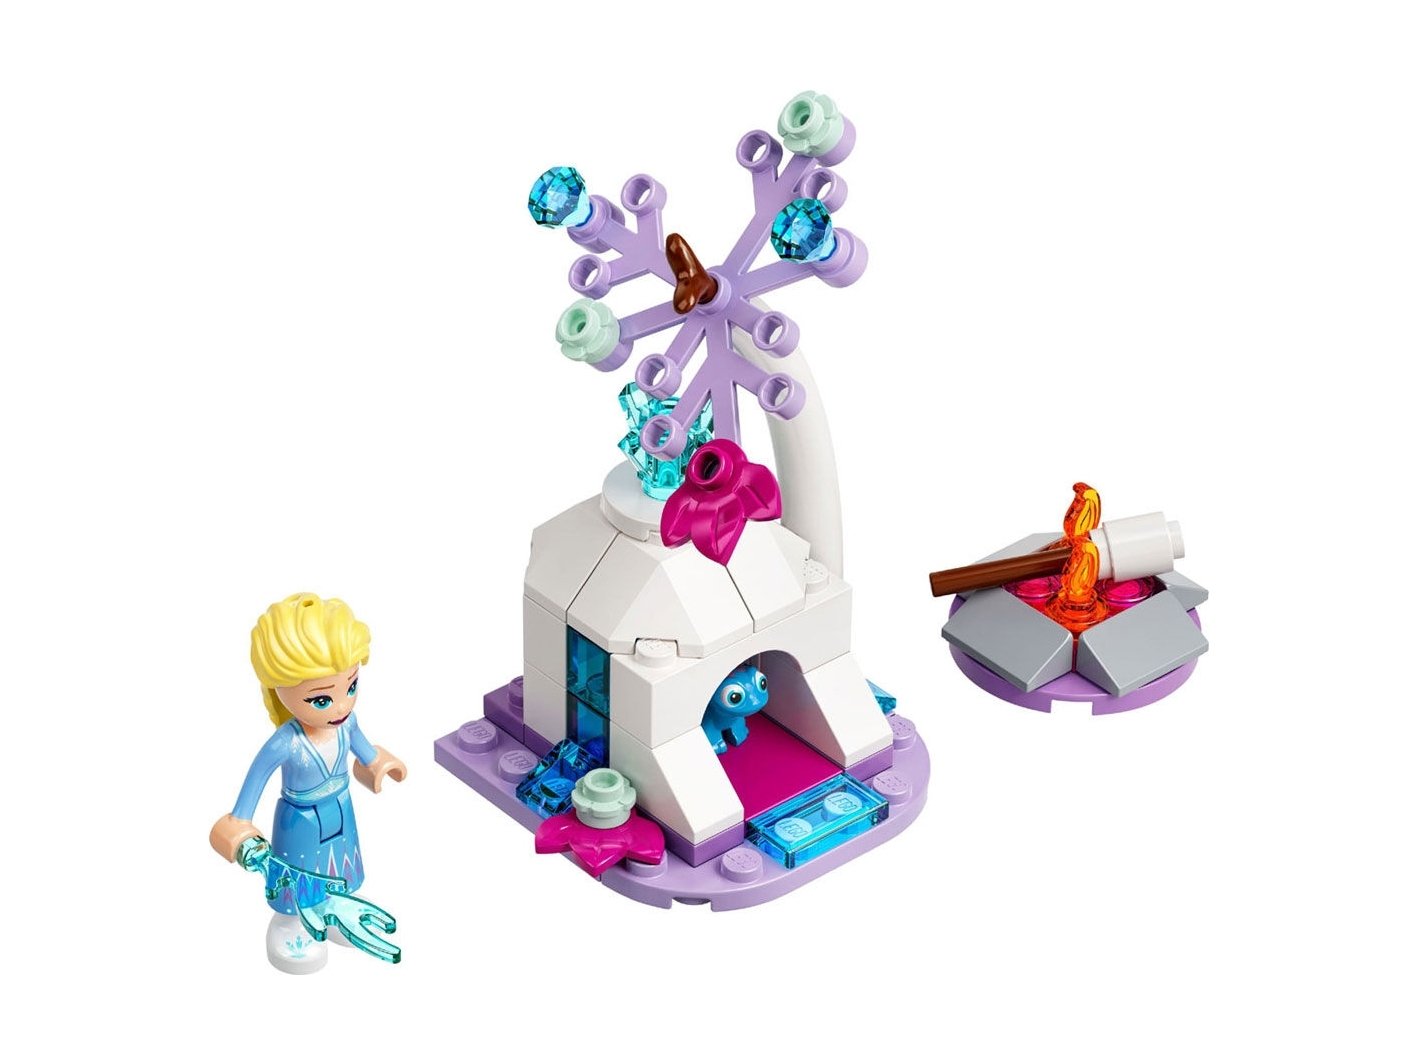 LEGO Disney Leśny biwak Elzy i Bruni 30559